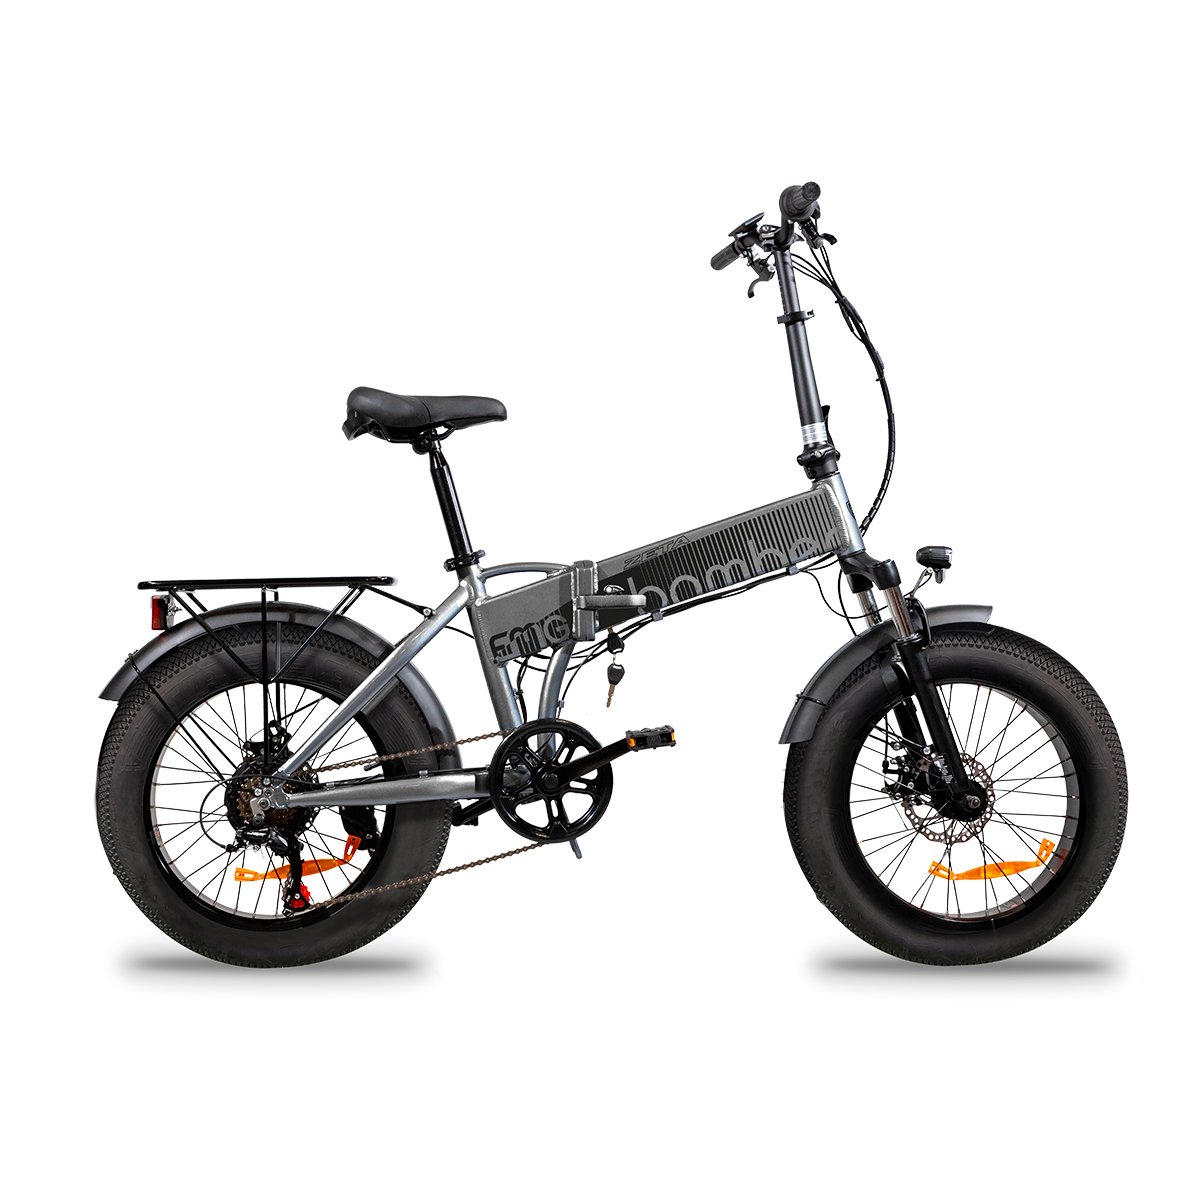 Bomber Zeta electric bike | Fat bike | EMG Mobility